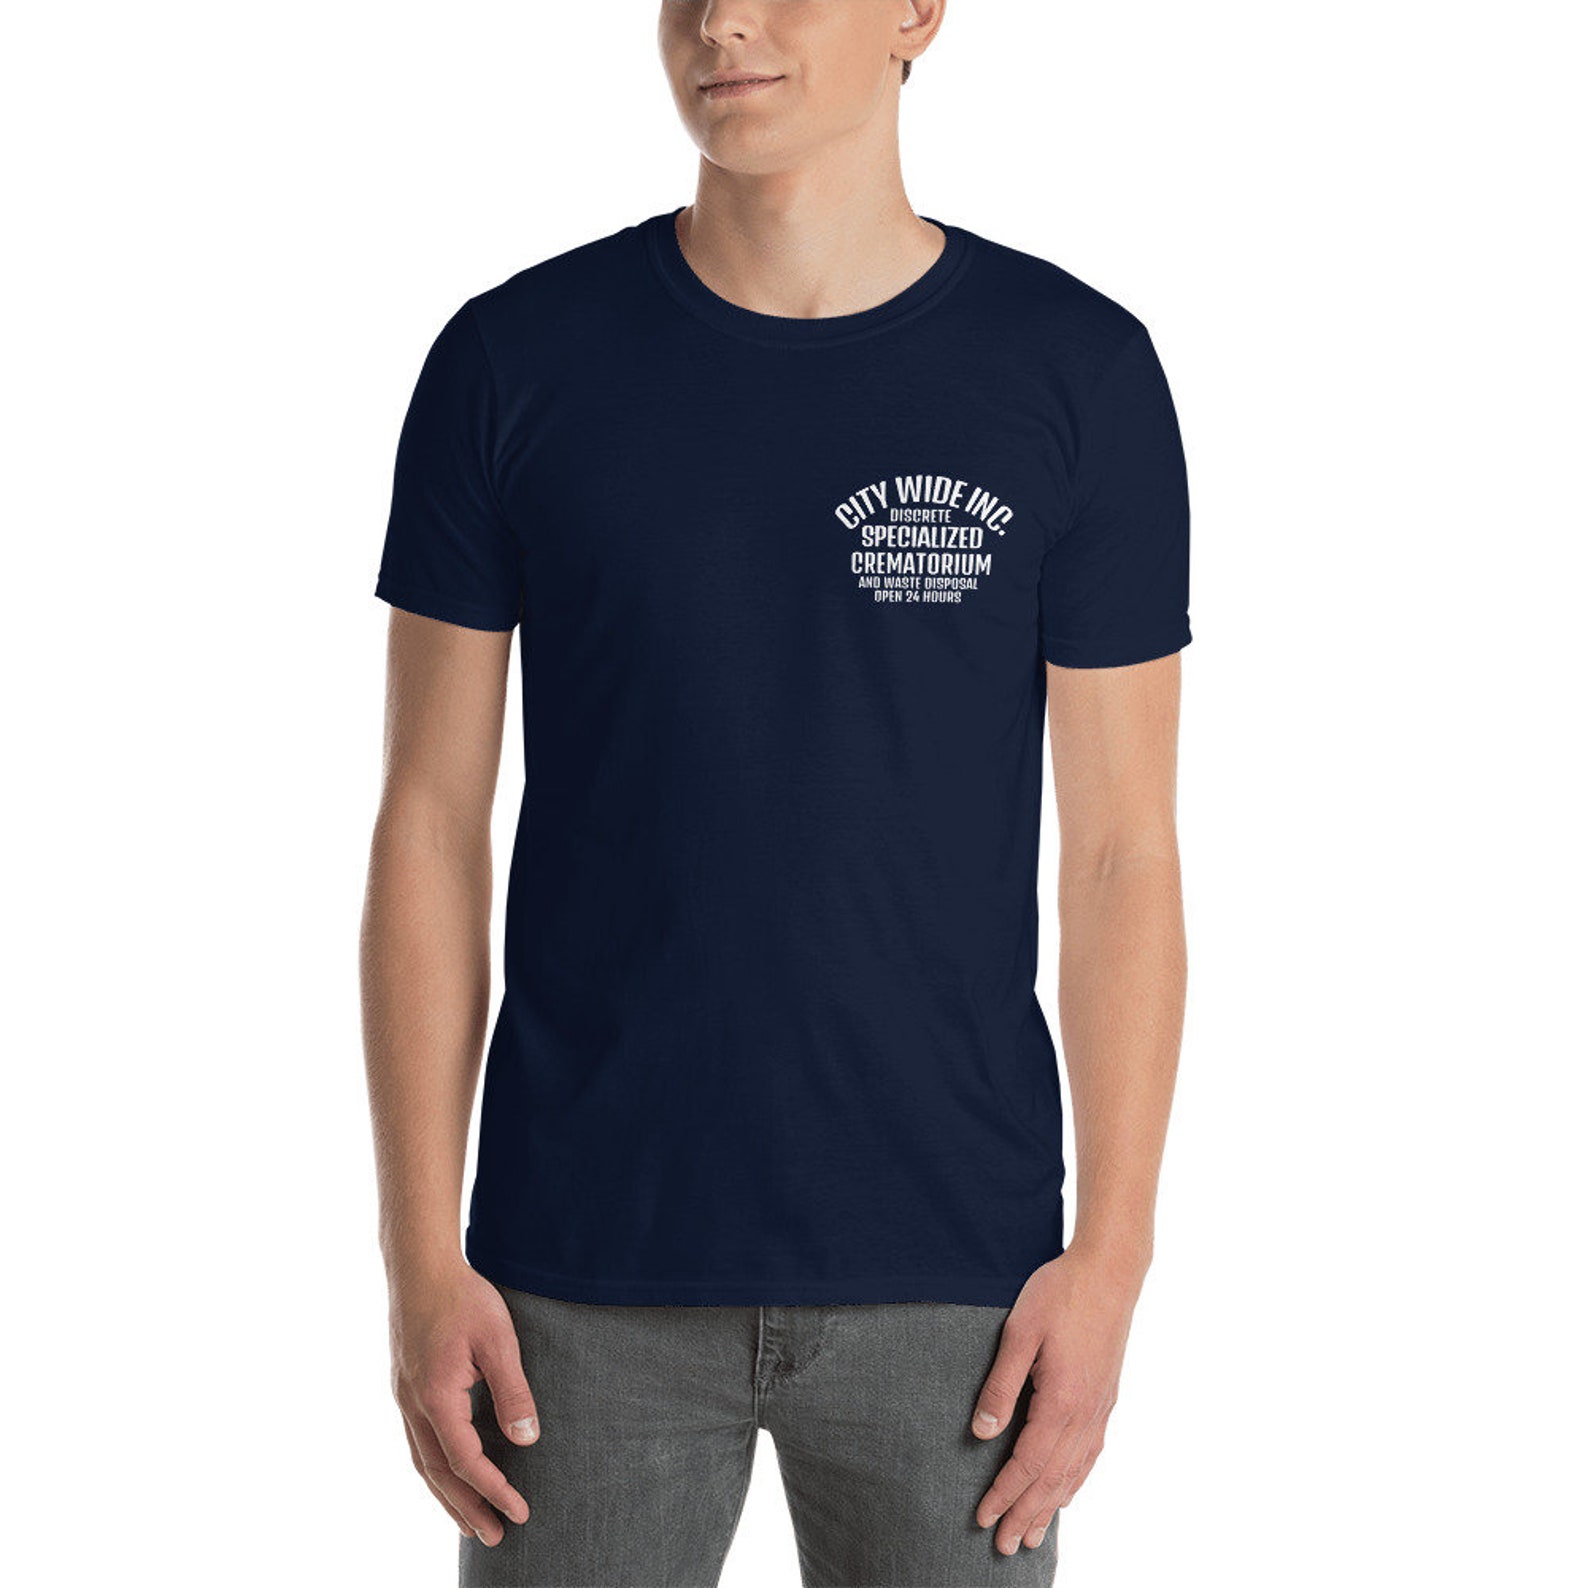 Crematorium T-shirt - Etsy